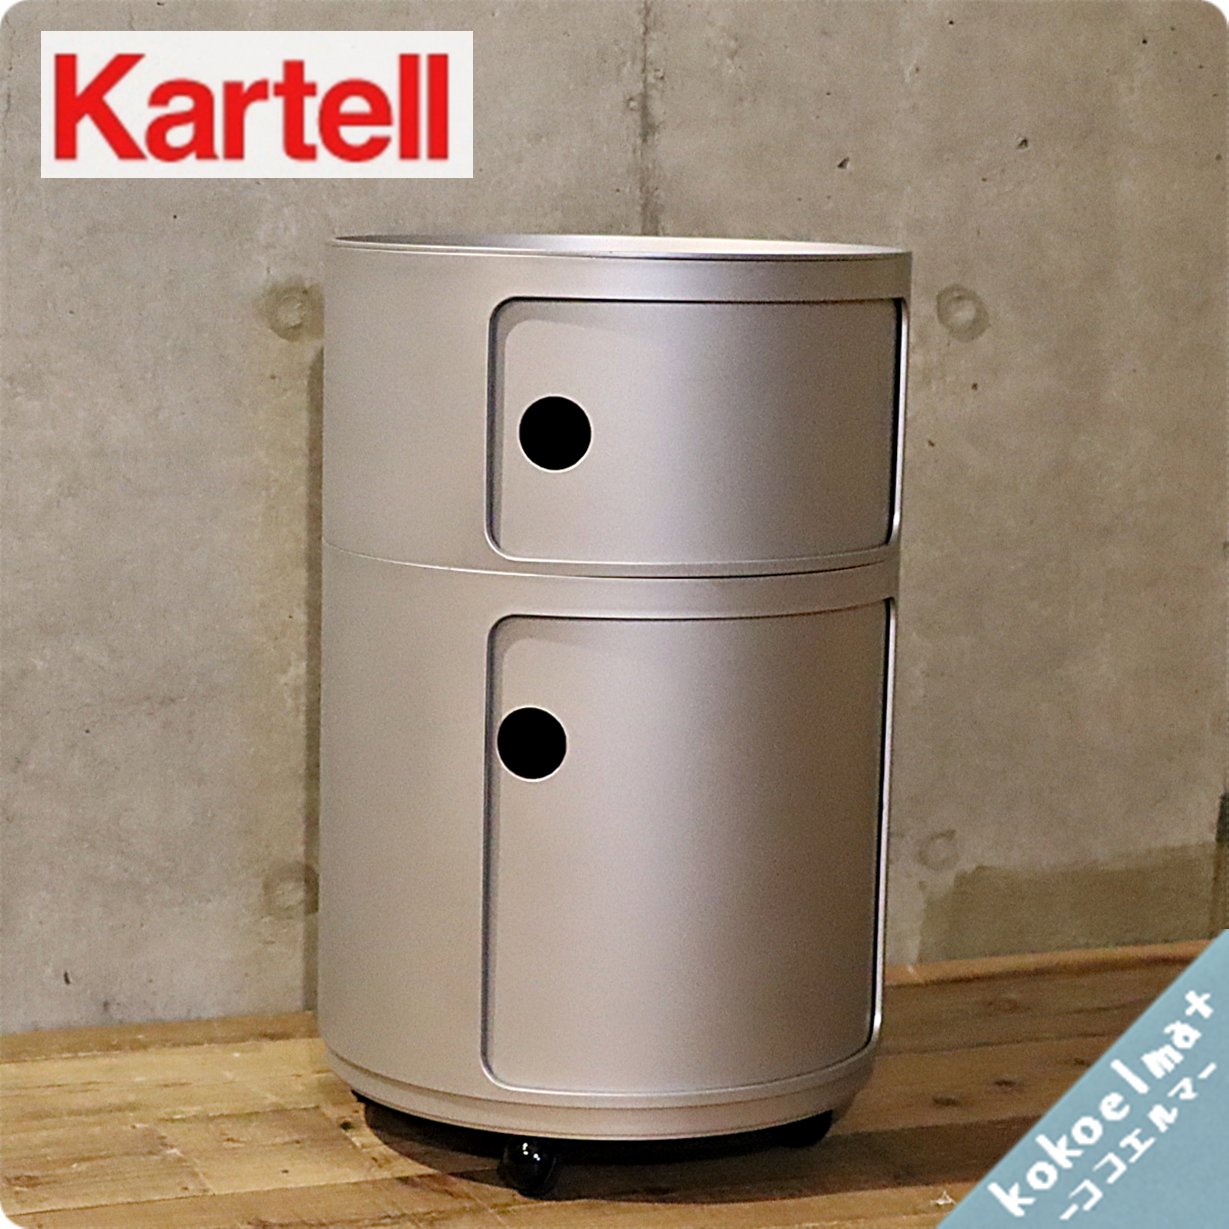 イタリアのメーカーKartell(カルテル)社の人気商品COMPONIBILI 